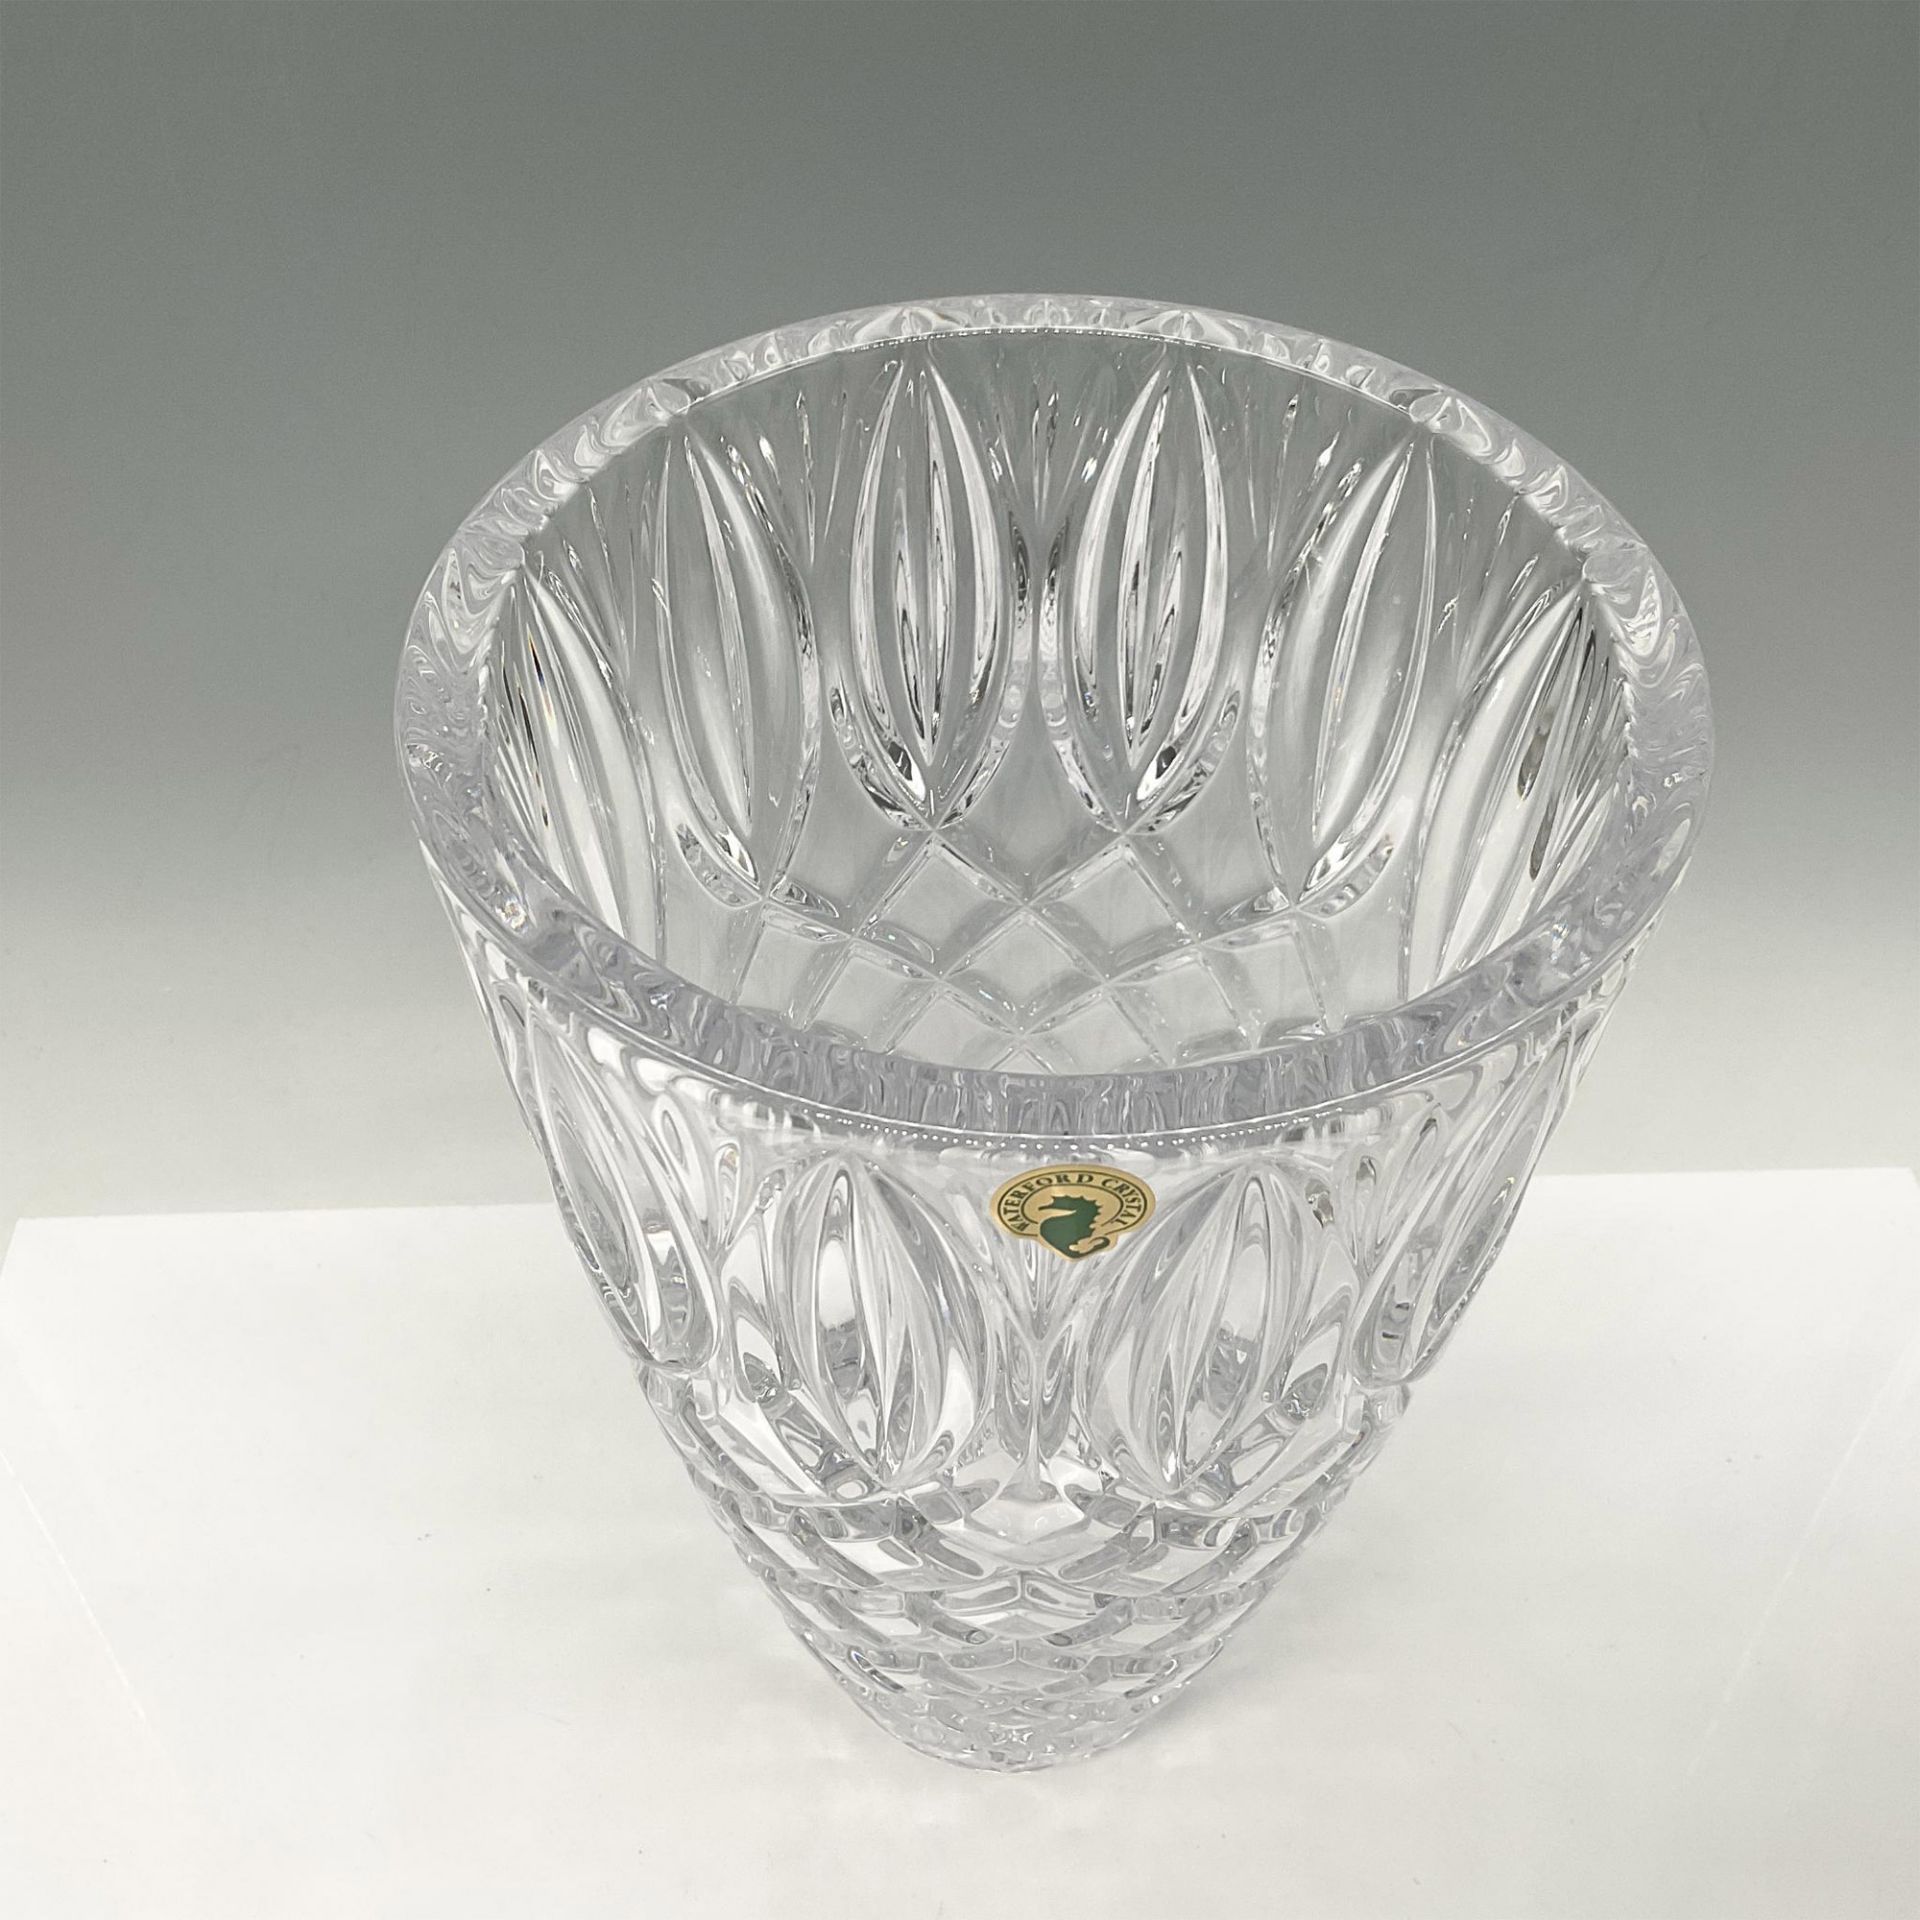 Waterford Crystal Grant Vase - Image 2 of 4